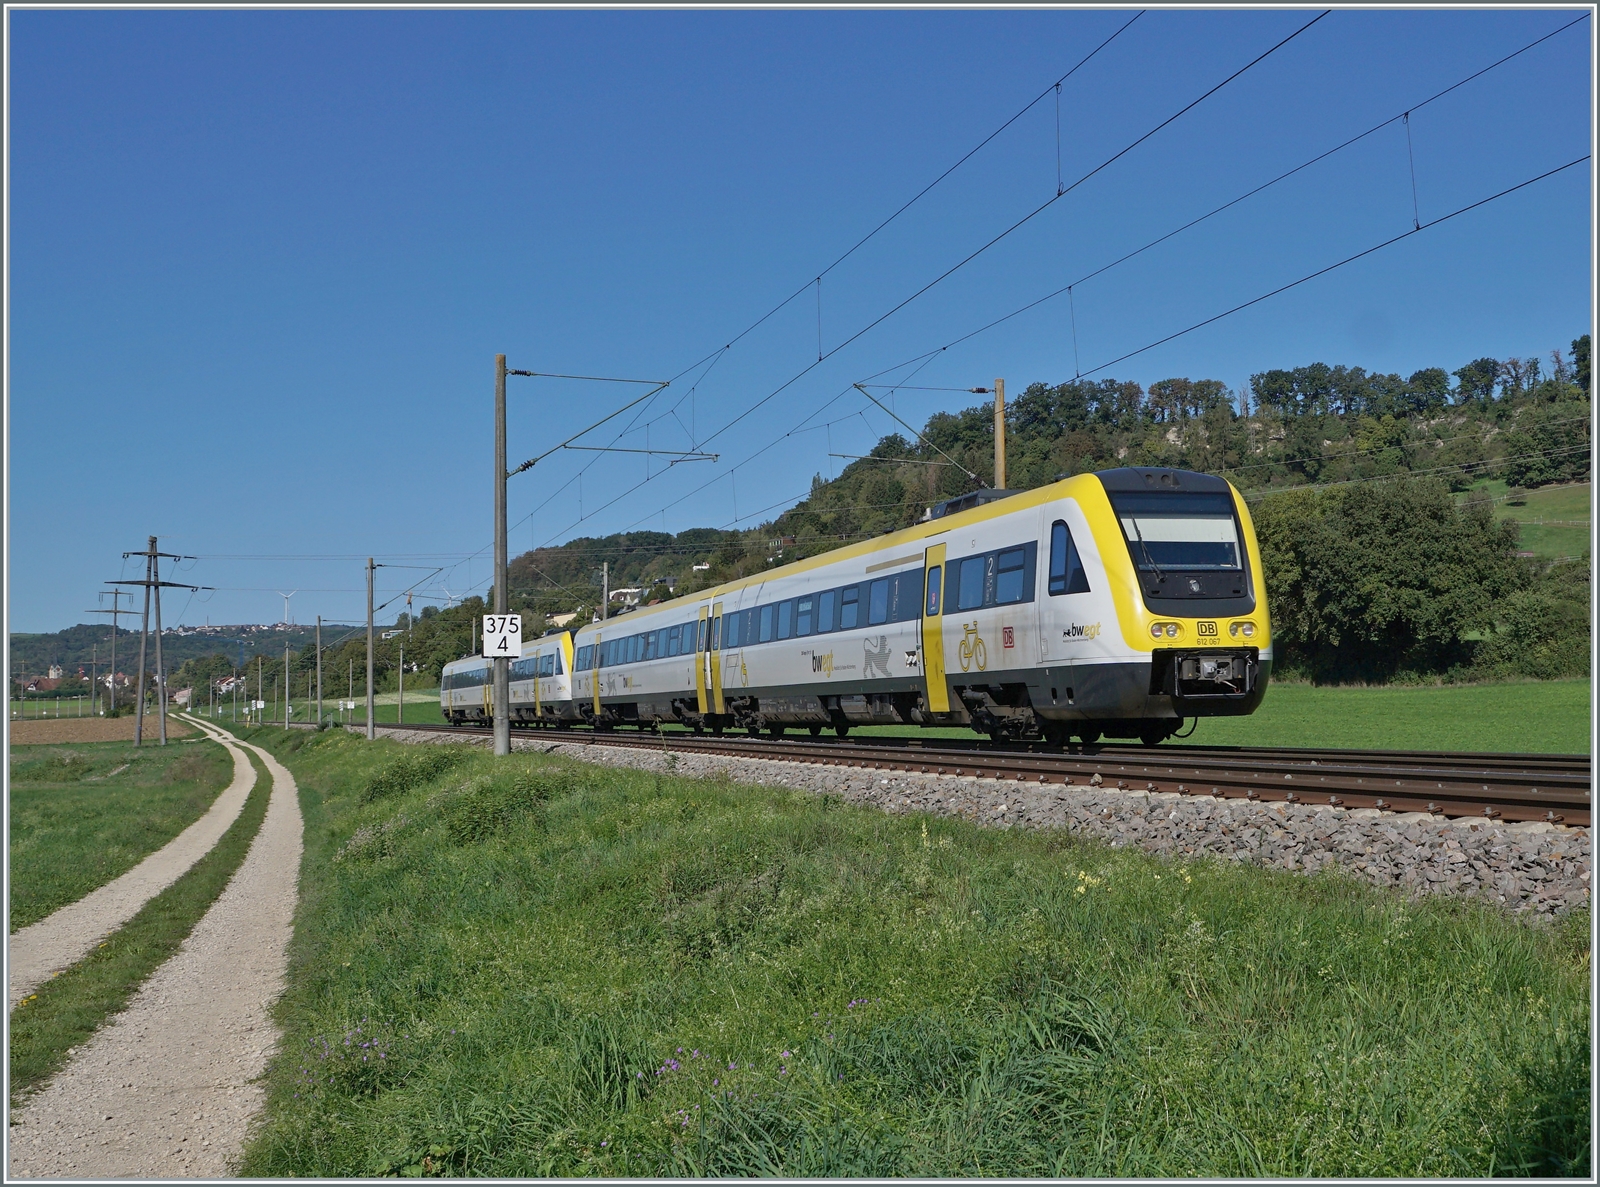 Zwei DB VT 612 mit dem 612 067 am Schluss sind kurz nach Bietingen als IRE auf dem Weg nach Basel Bad Bf. Der Zug erreicht in Kürze die Grenze, wird aber die Schweiz in einer guten halben Stunde verlassen um am Hochrhein entlang nach Basel Bad zu fahren.

19. Sept. 2022